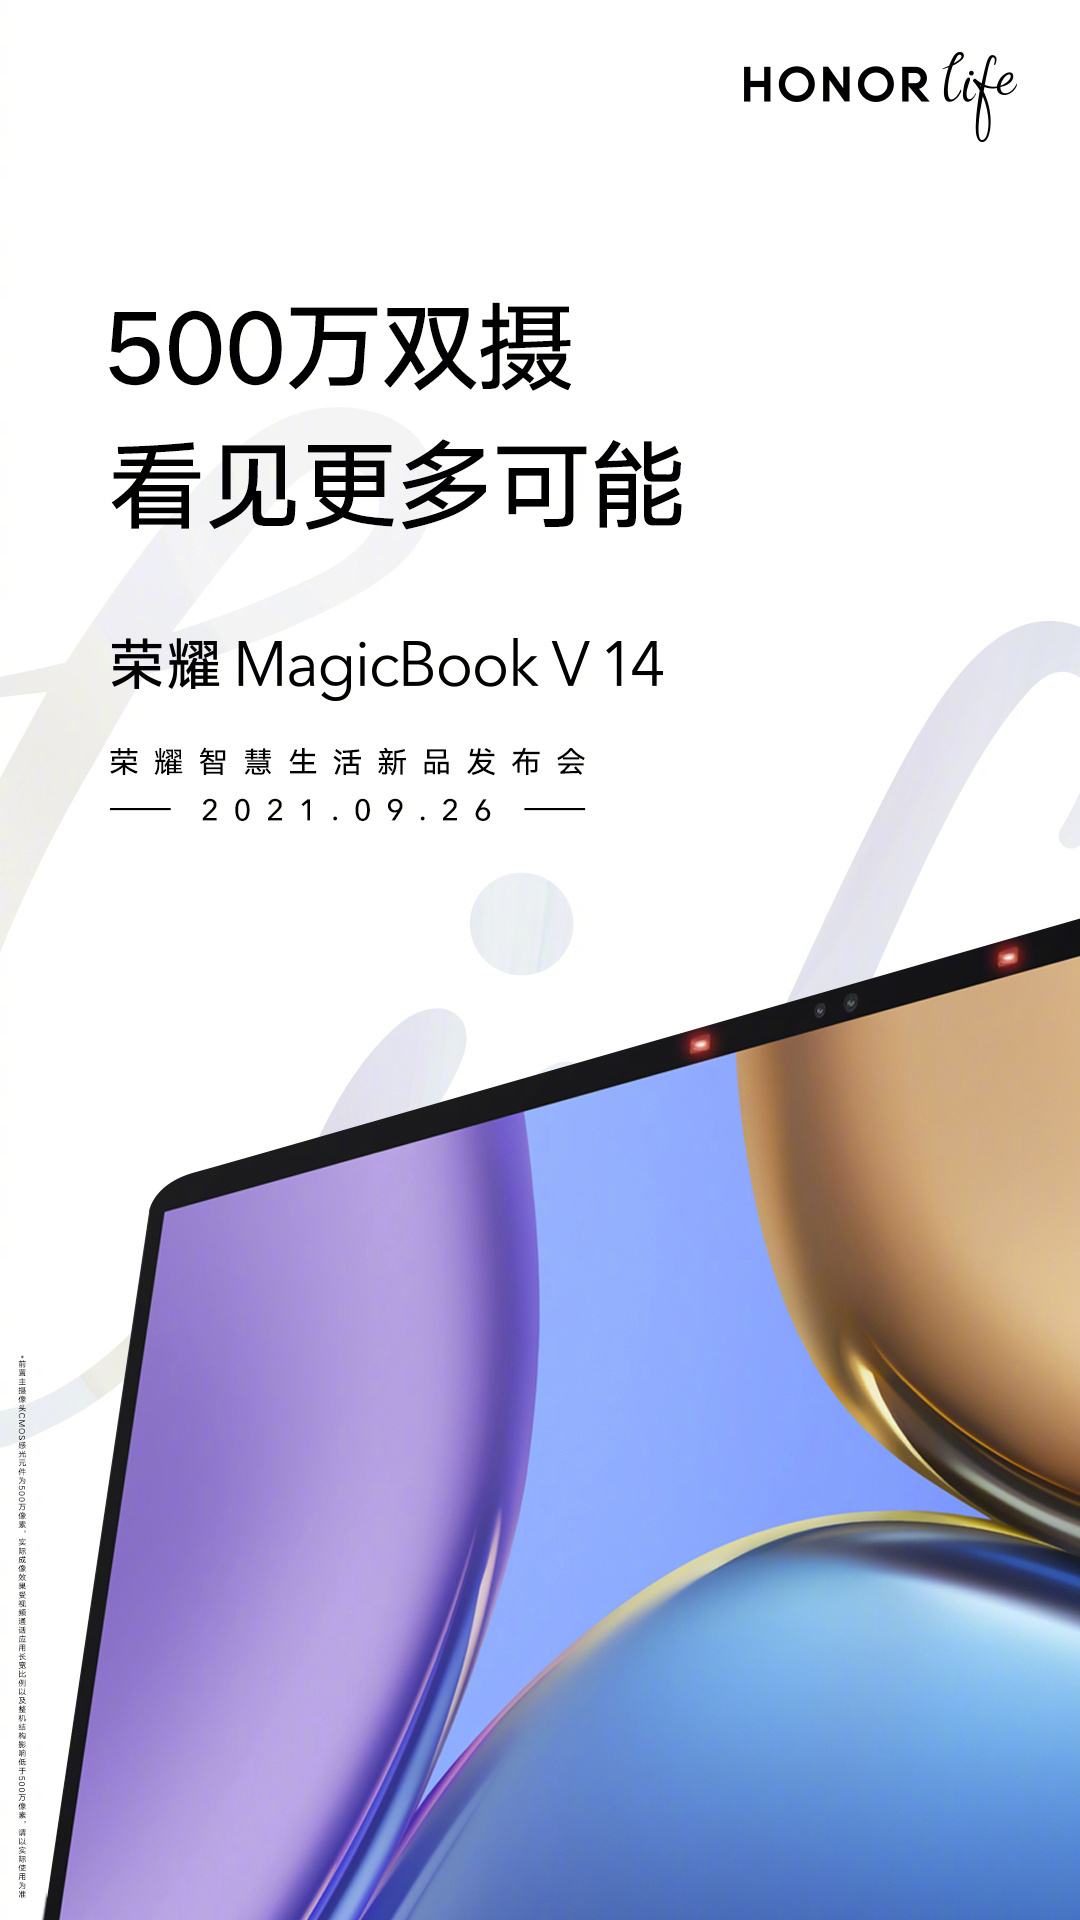 Honor Vision MagicBook V 14 5MP Camera